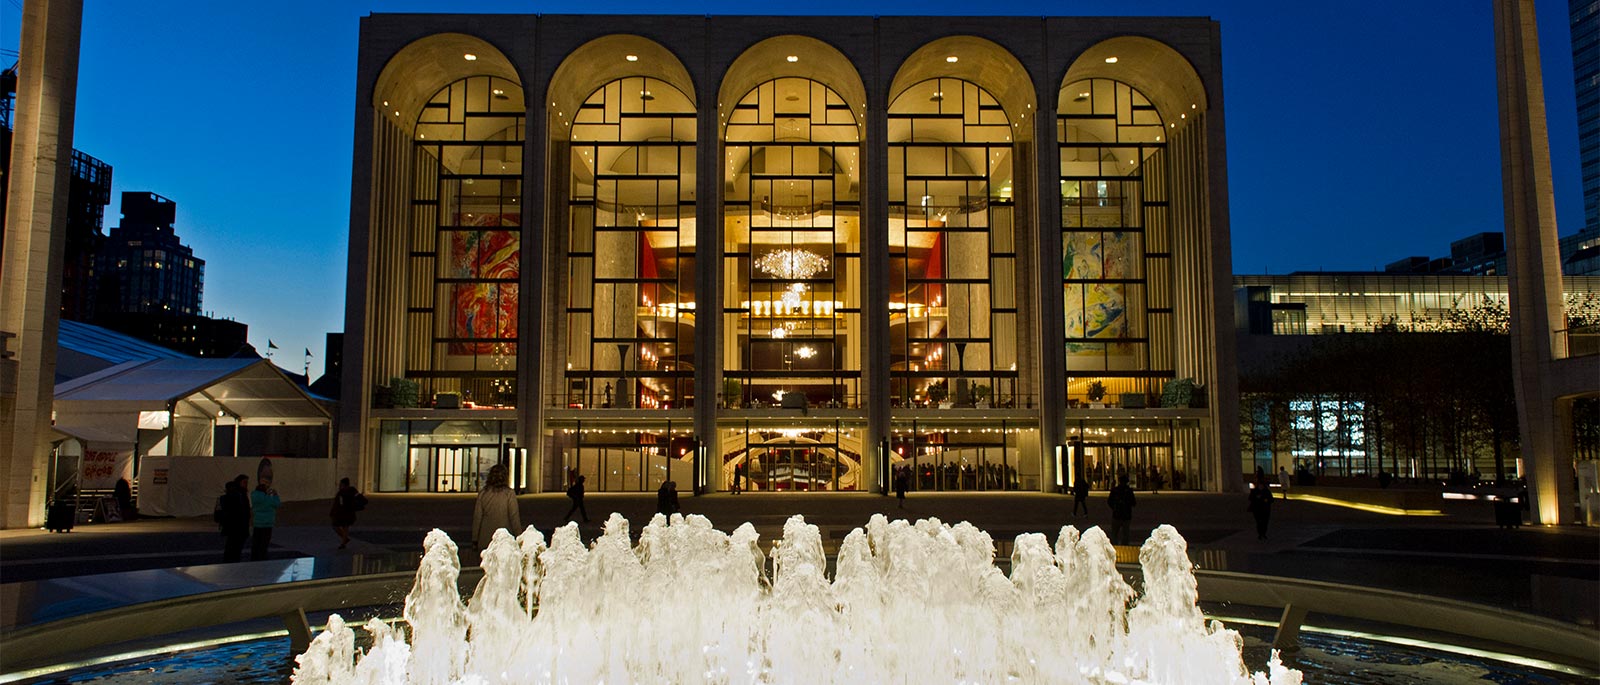 Metropolitan Opera House de Nova York [Divulgação]